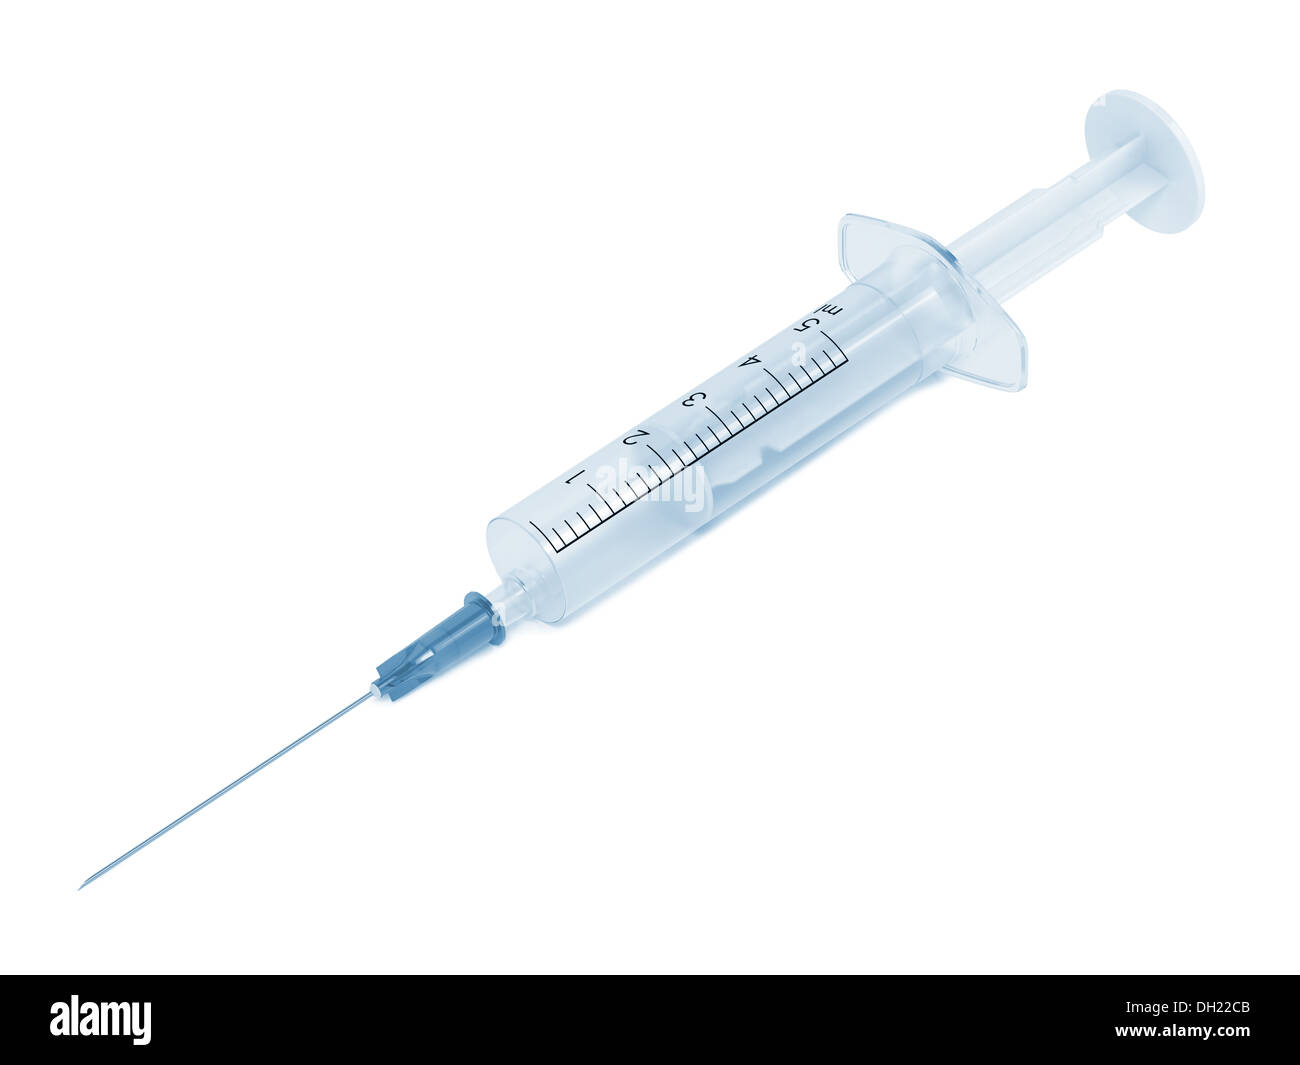 Syringe and Needle Isolated on White Background. Stock Photo